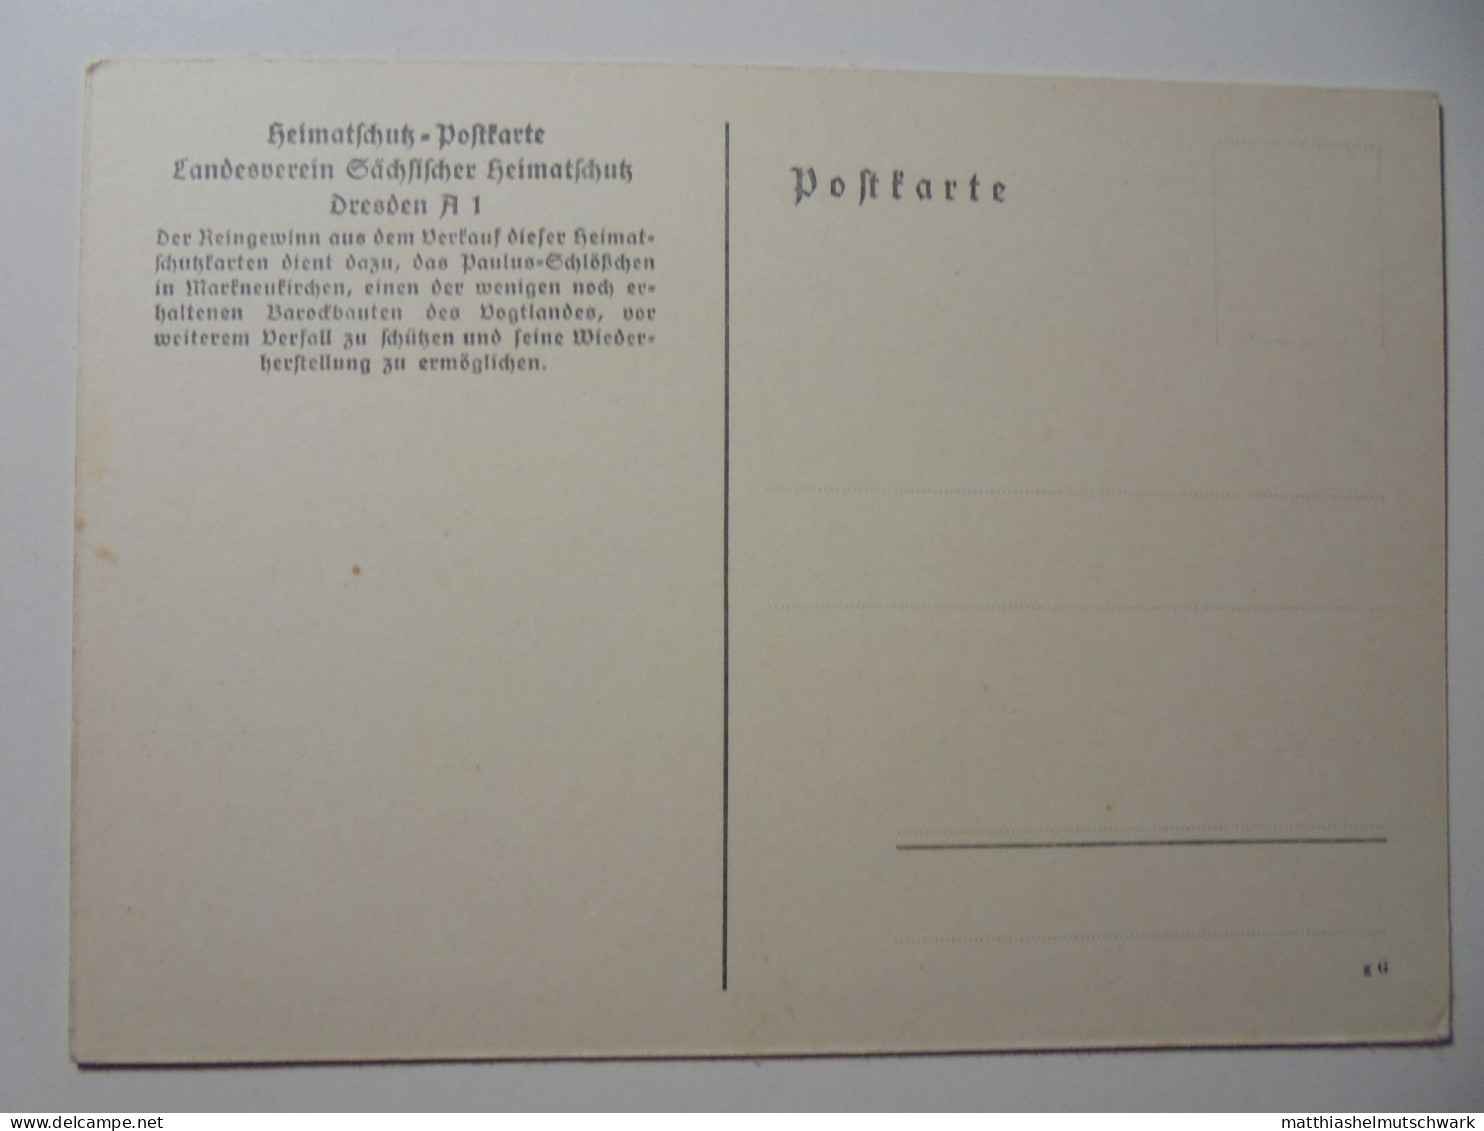 Postkartensatz DRESDEN IN DDR-ZEIT: Das Paulus-Schlößchen in Markneukirchen, Heimatschutz-Postkarte, Landesv